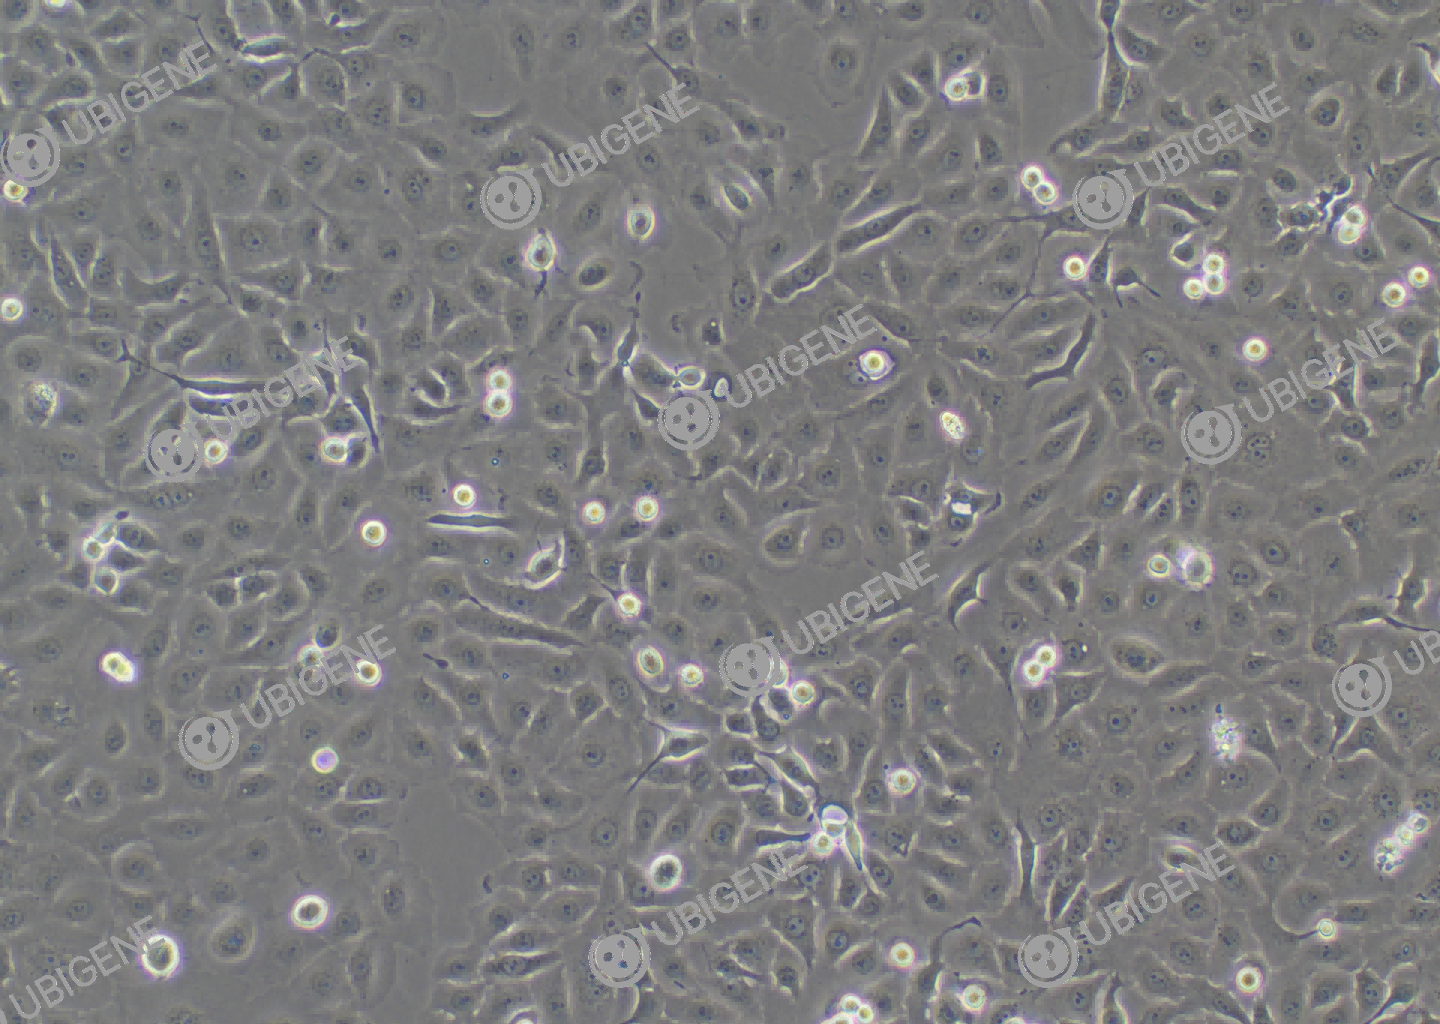 人非小细胞肺癌细胞(NCI-H1650)细胞形态培养图